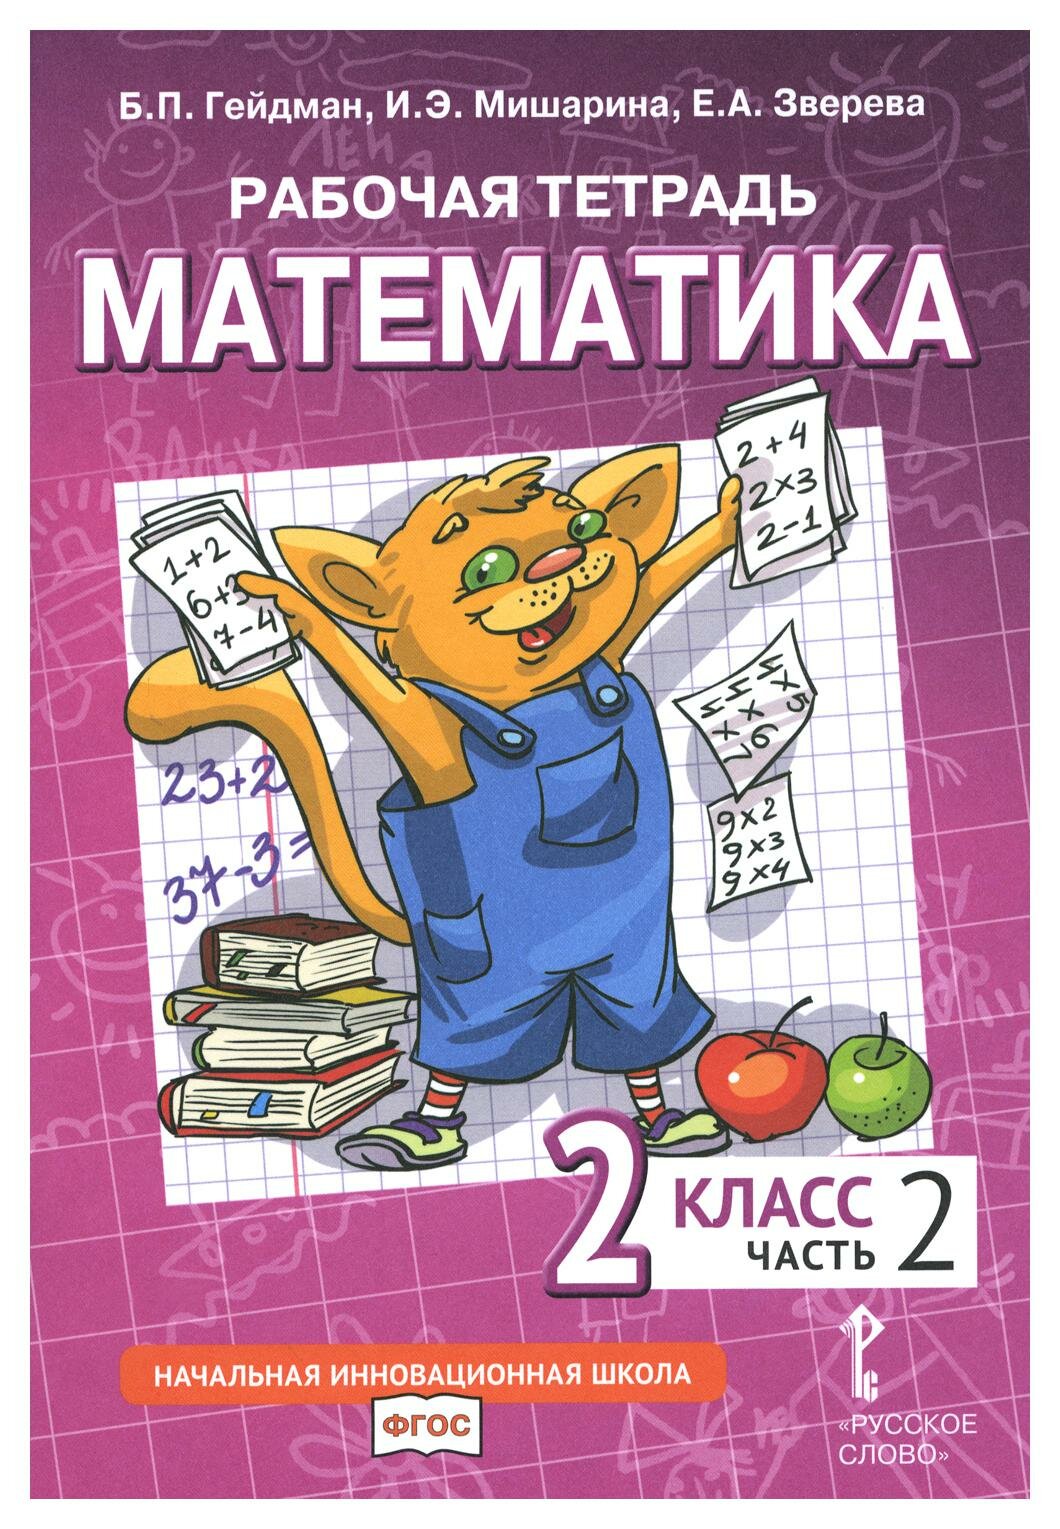 Математика. 2 класс: В 4 ч. Ч. 2: рабочая тетрадь. 3-е изд. Гейдман Б. П, Мишарина И. Э, Зверева Е. А. мцнмо